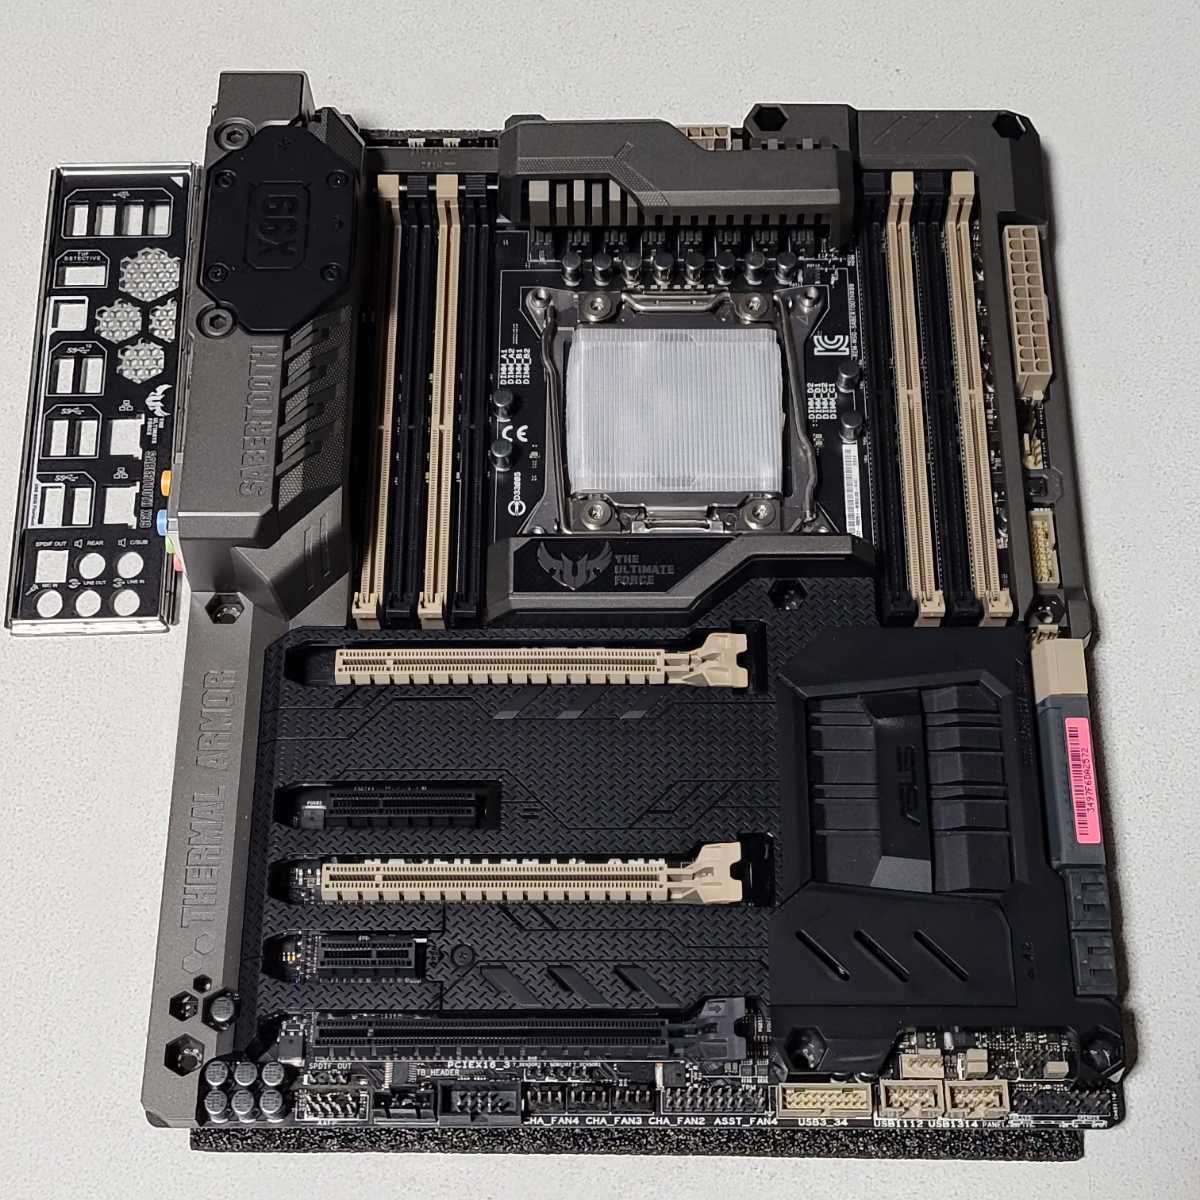 ASUS SABERTOOTH X99 IOパネル付属 LGA2011-3 ATXマザーボード 最新Bios 動作確認済 PCパーツ